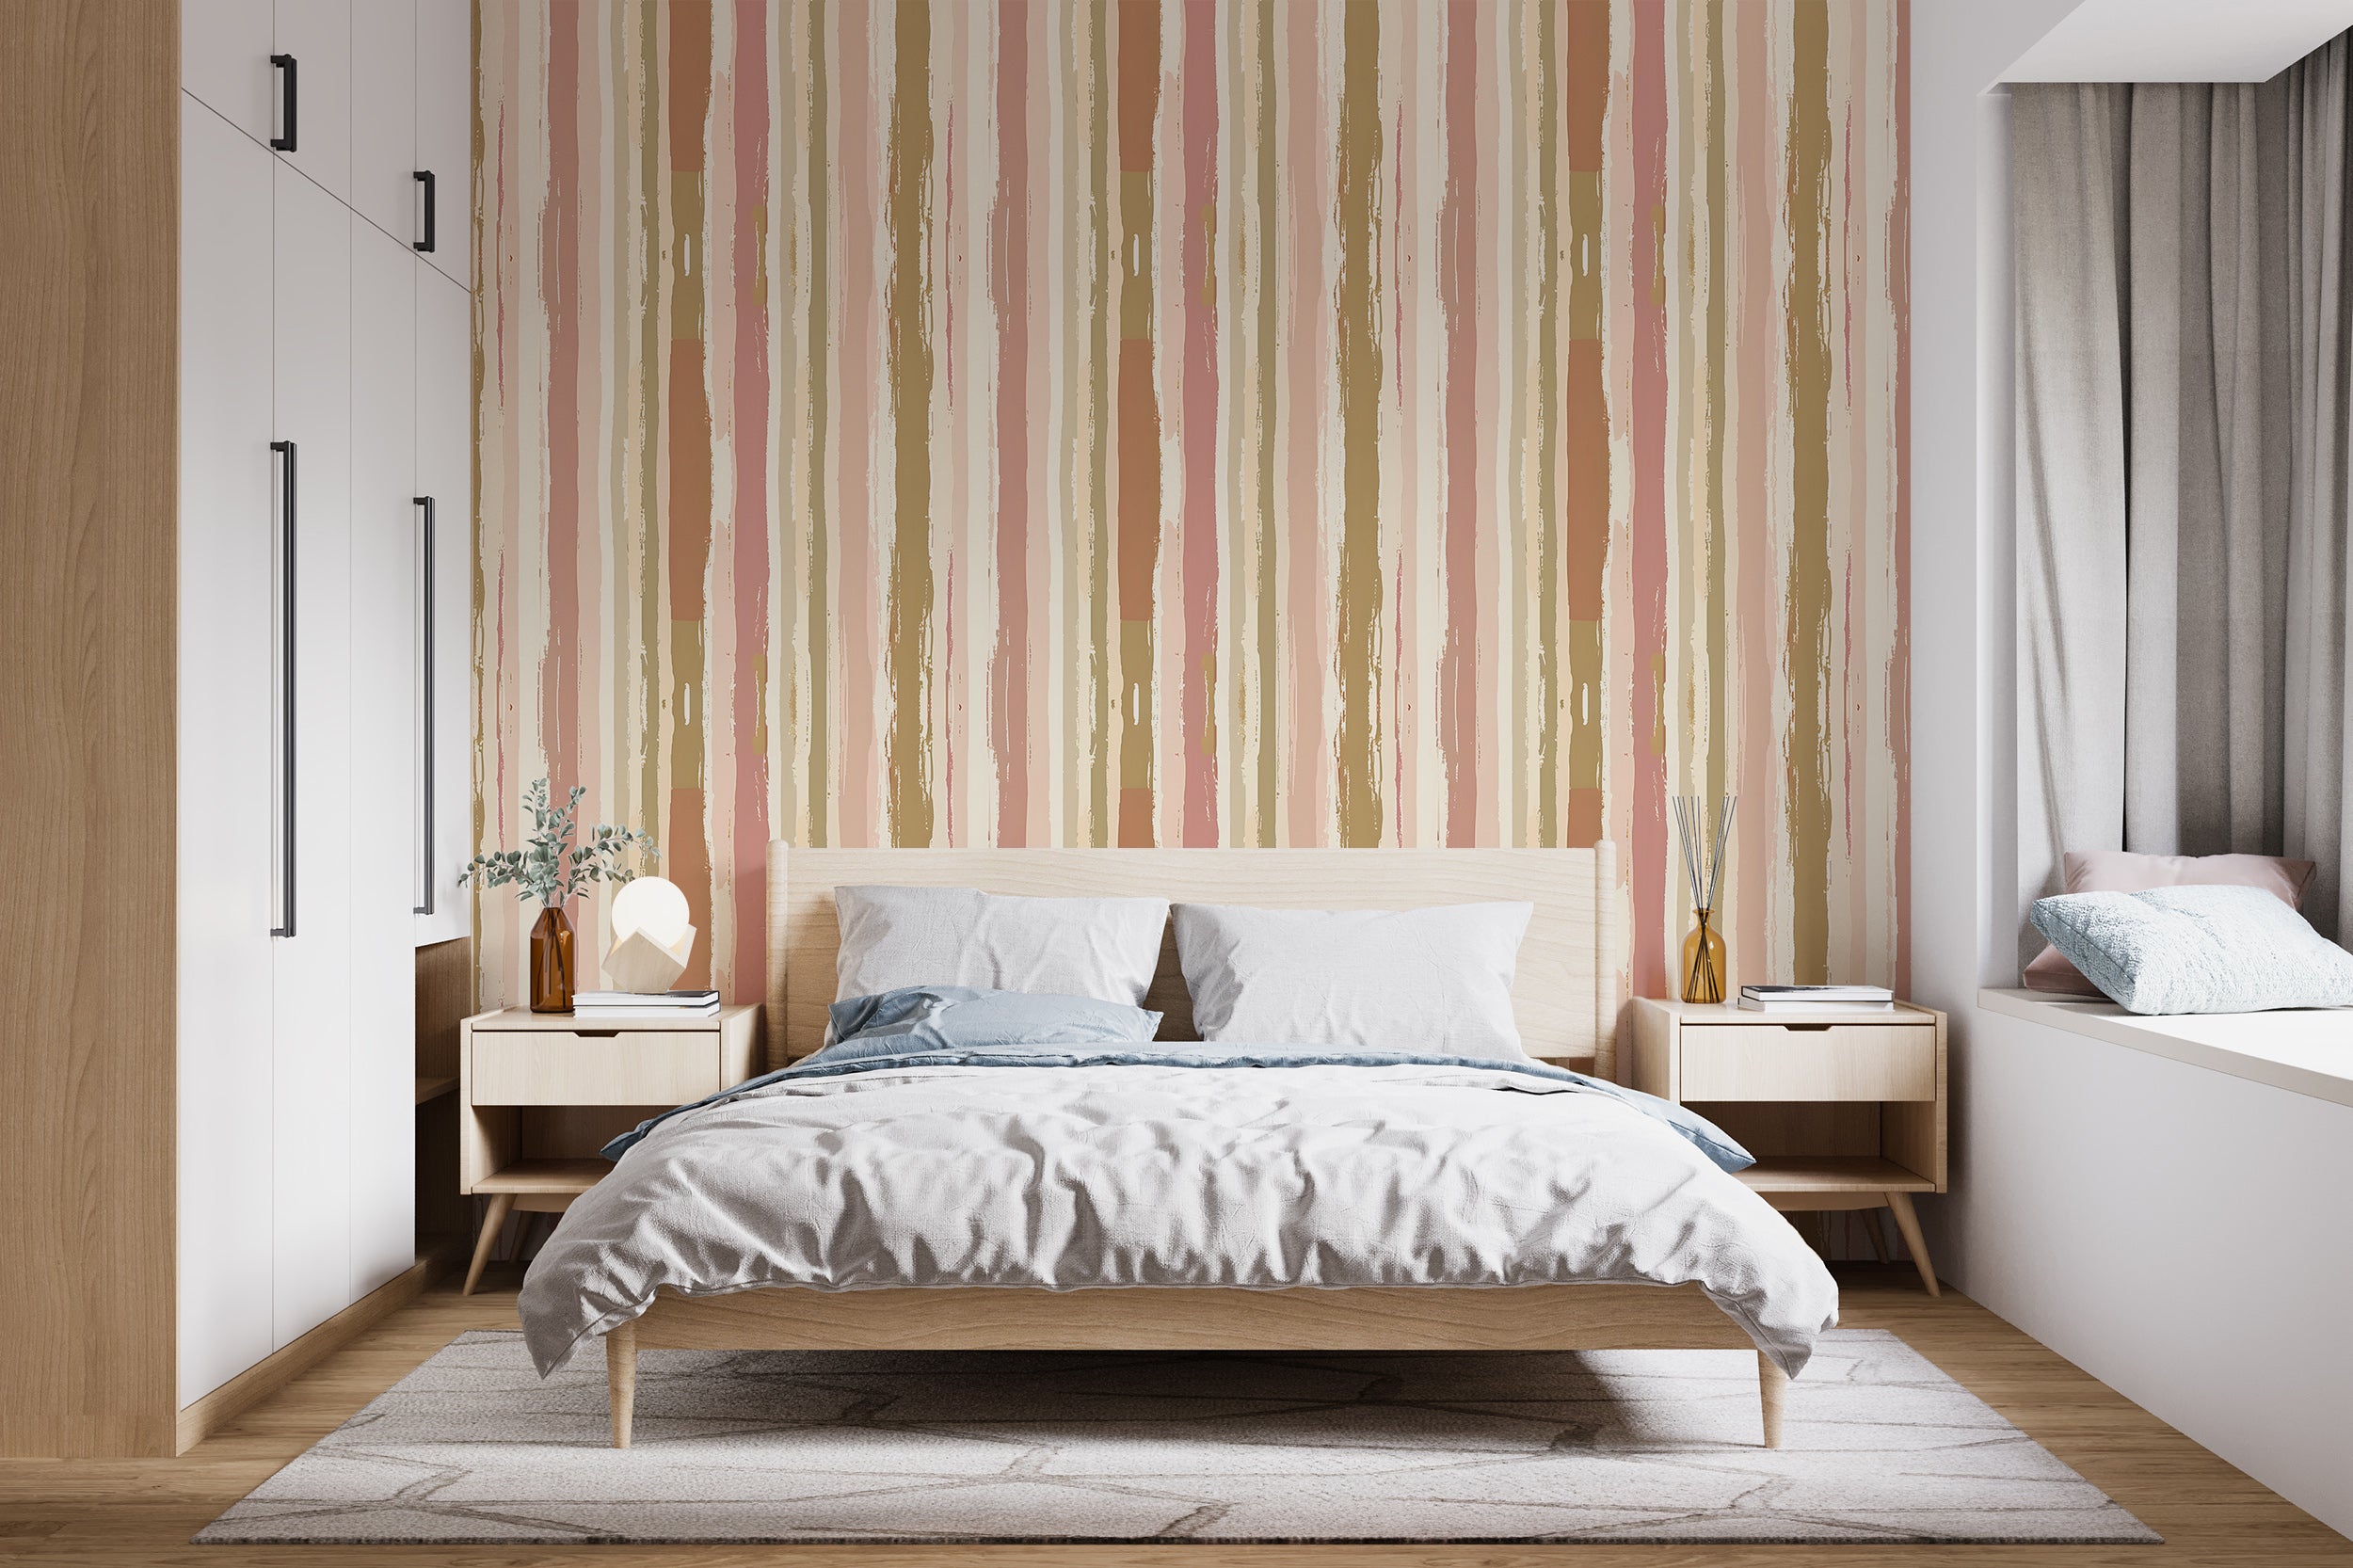 Soft Pastel Vertical Stripes PVC-free Wallpaper